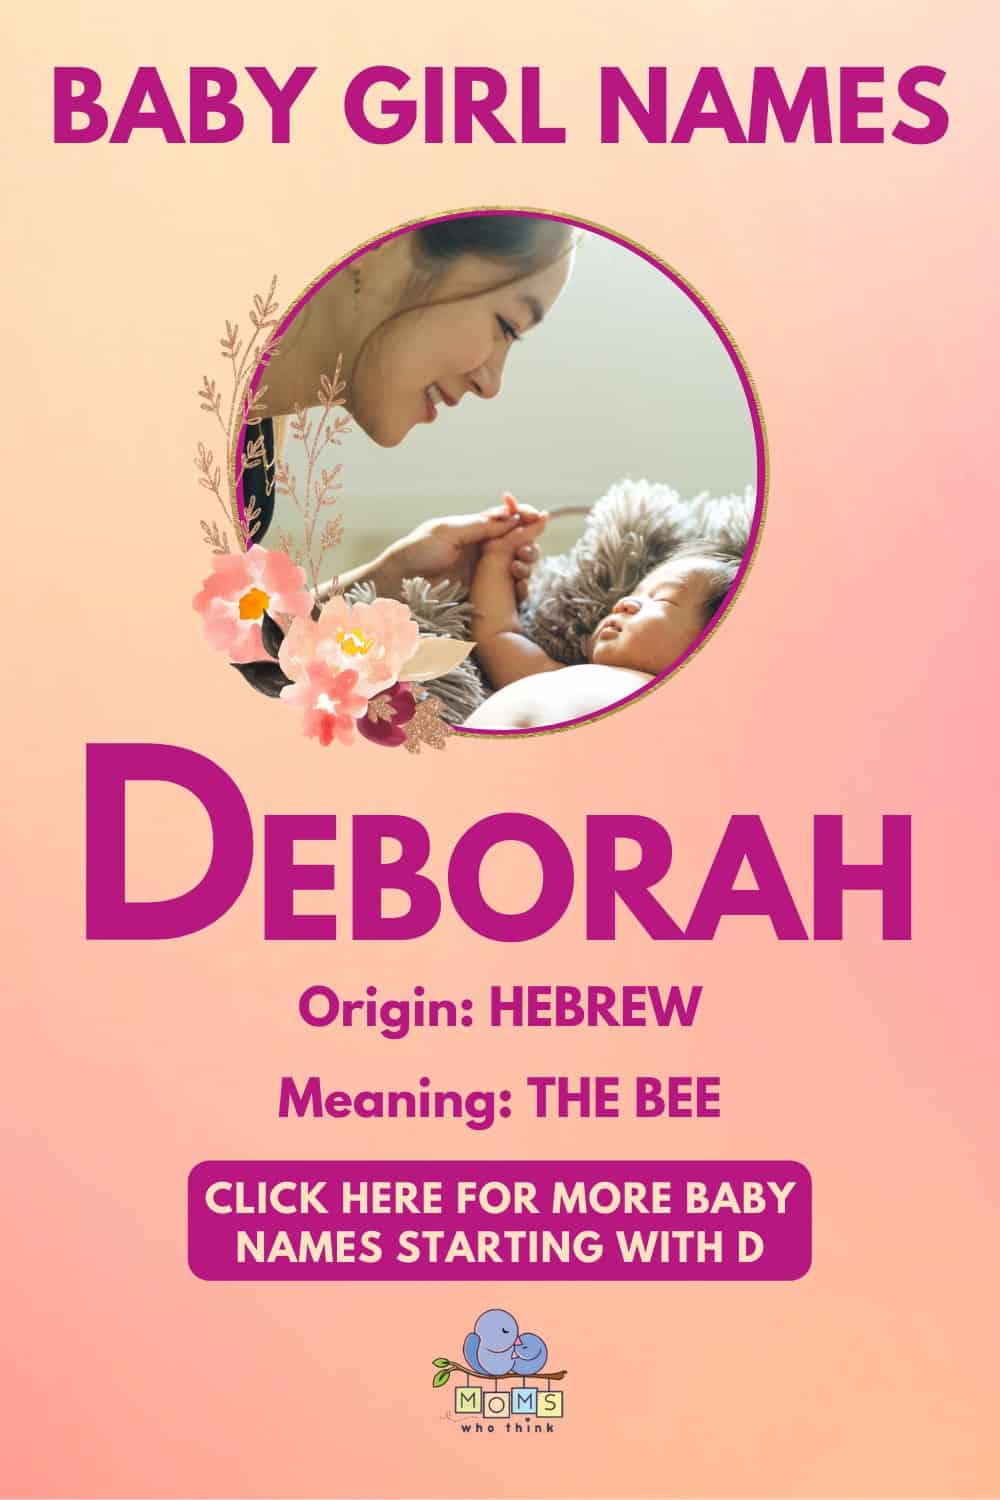 Baby girl name meanings - Deborah